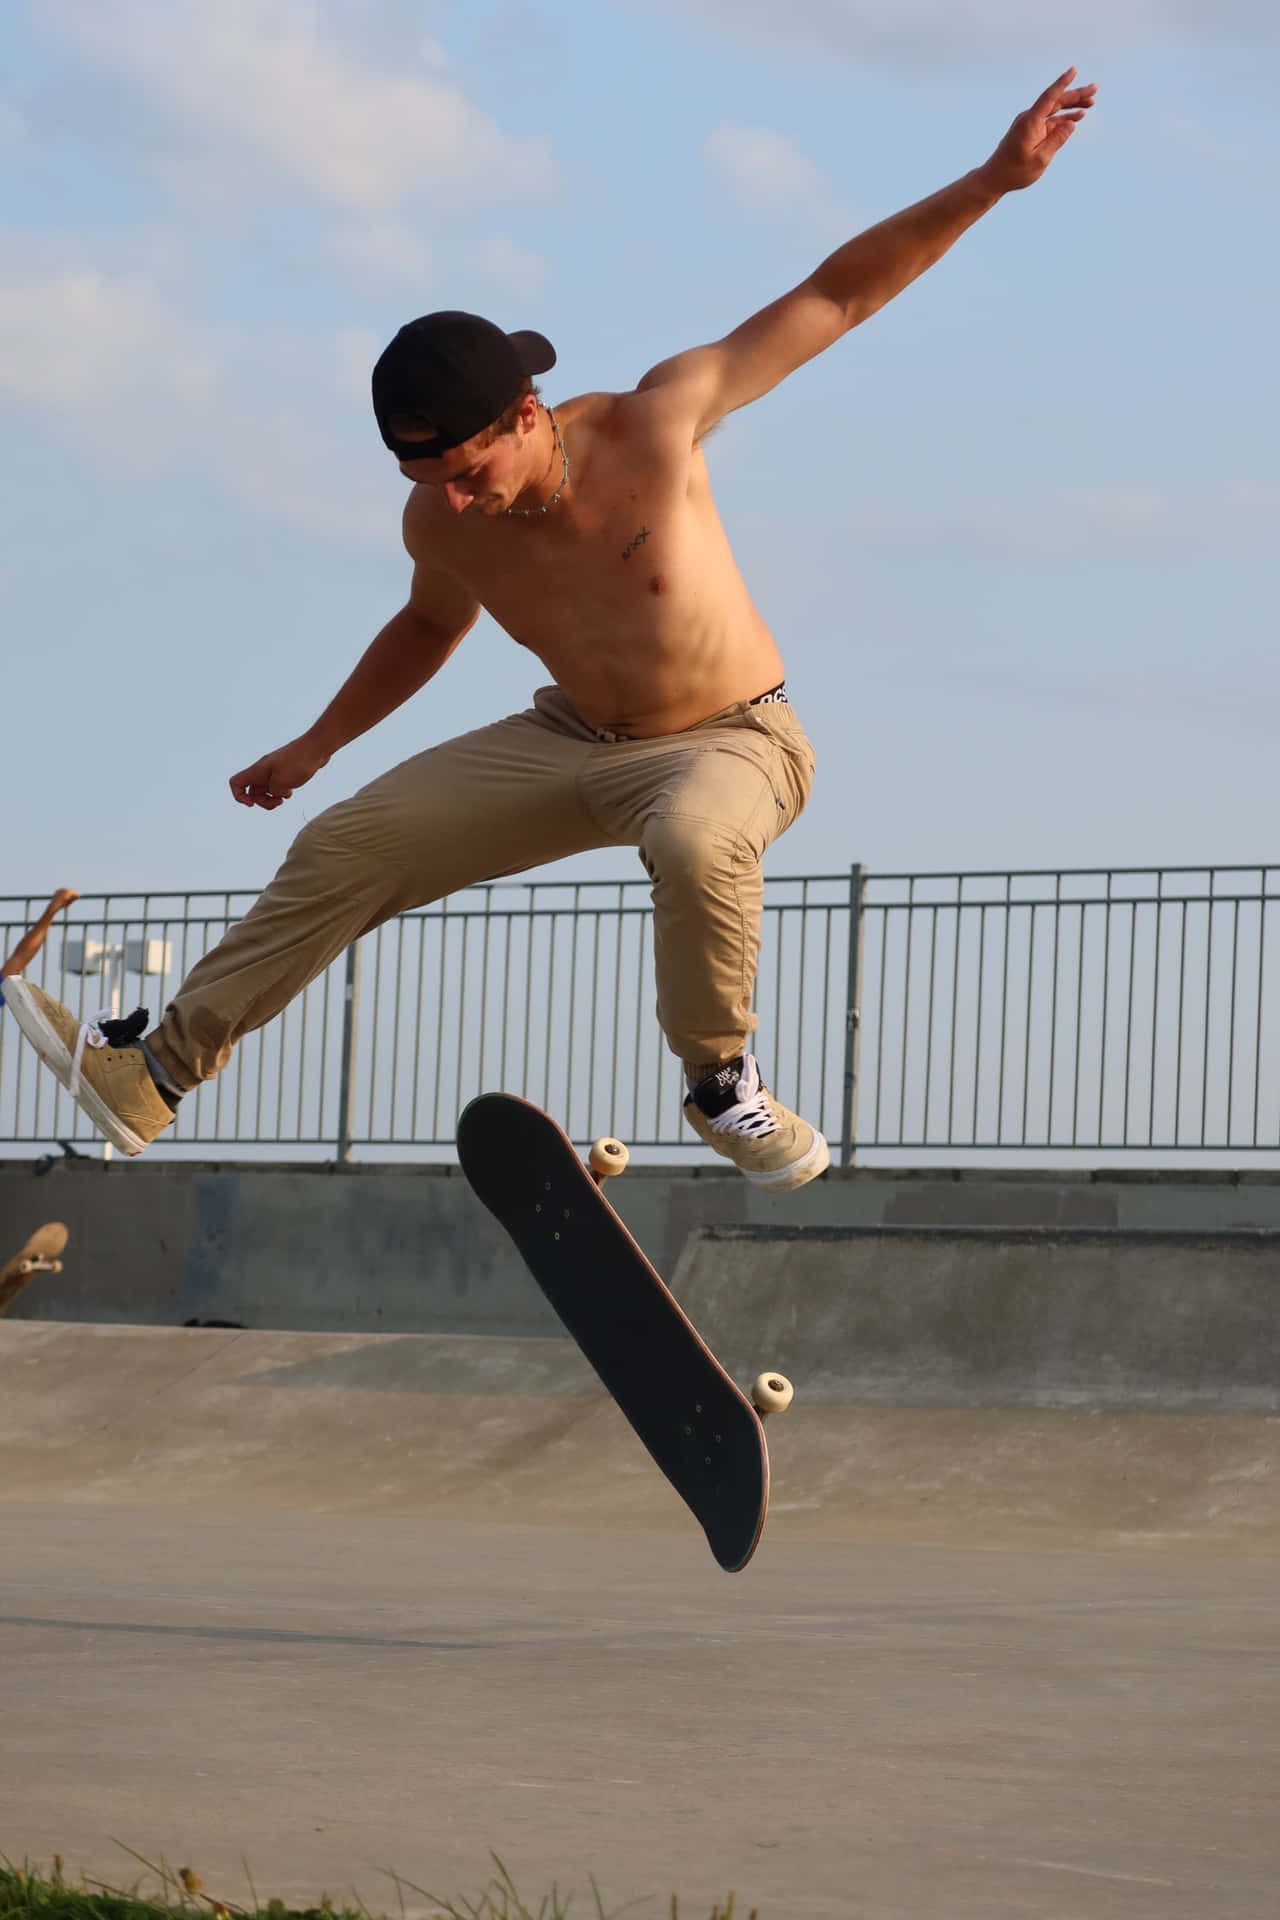 Einskateboarder Zeigt Seine Fähigkeiten Auf Den Straßen.